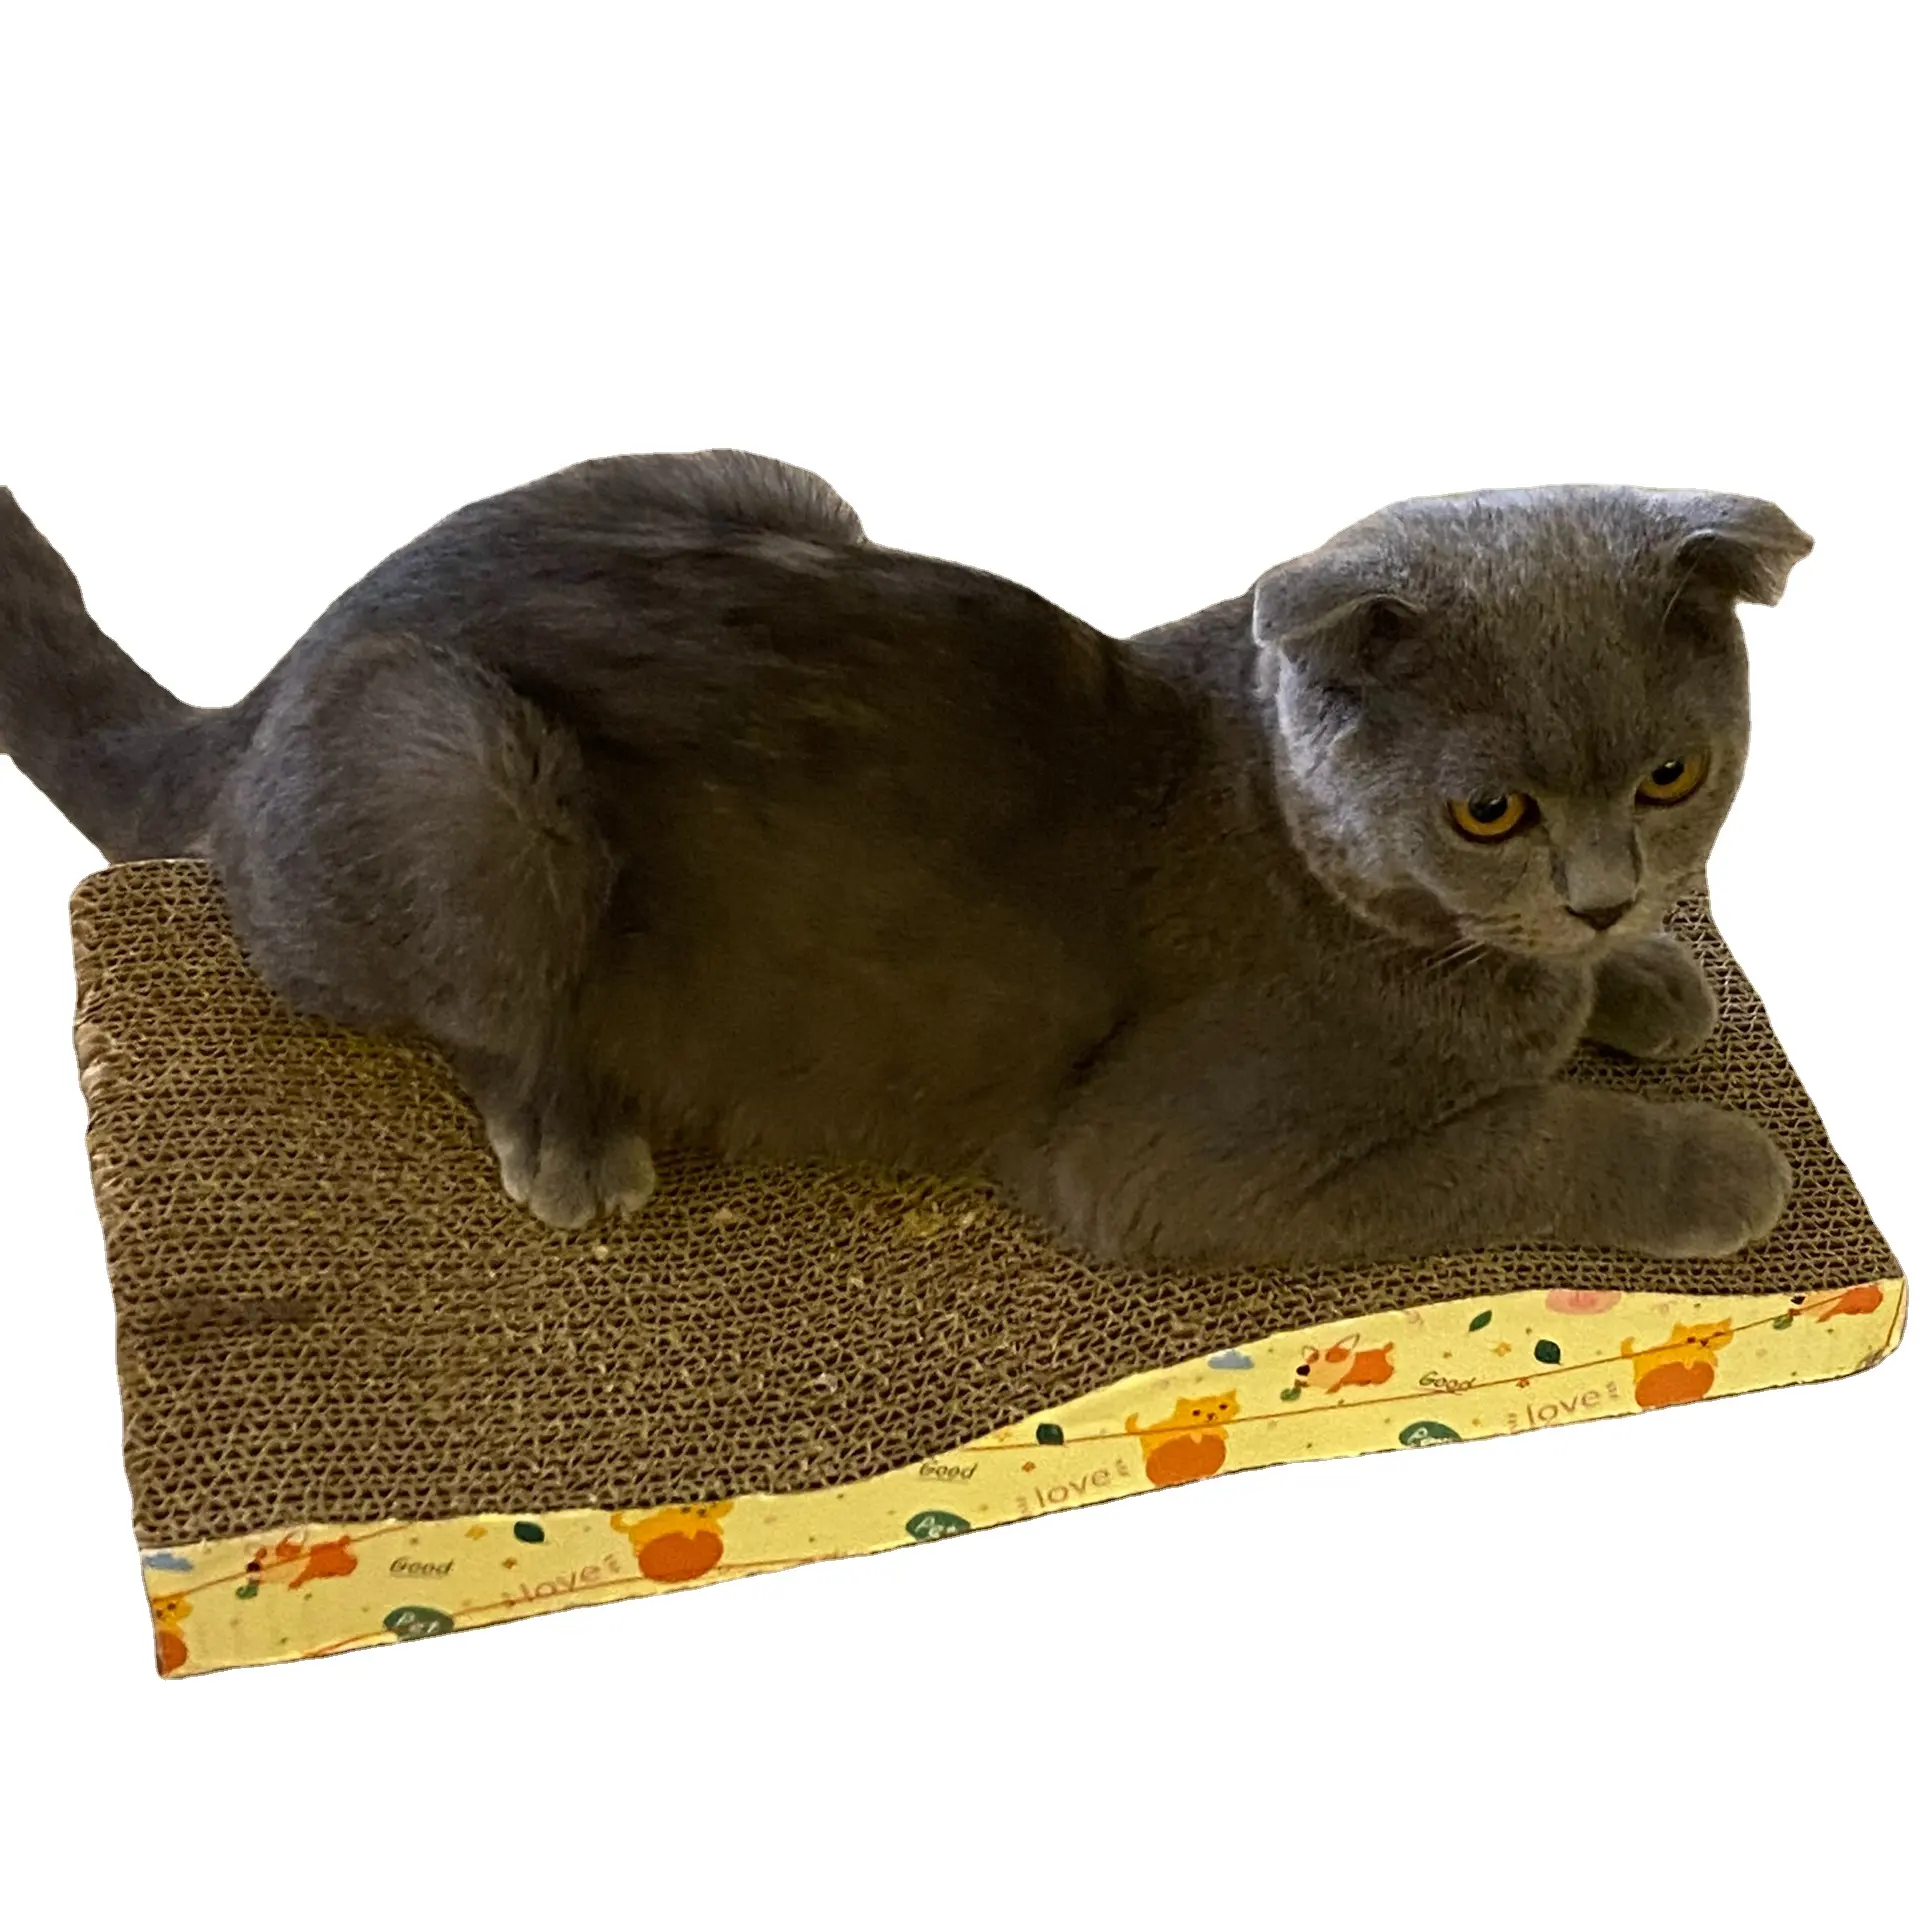 Лидер продаж! Лучшая качественная бумажная чесалка для кошек, Когтеточка для сна, игровая Когтеточка разных размеров по индивидуальному заказу во Вьетнаме-WINVN